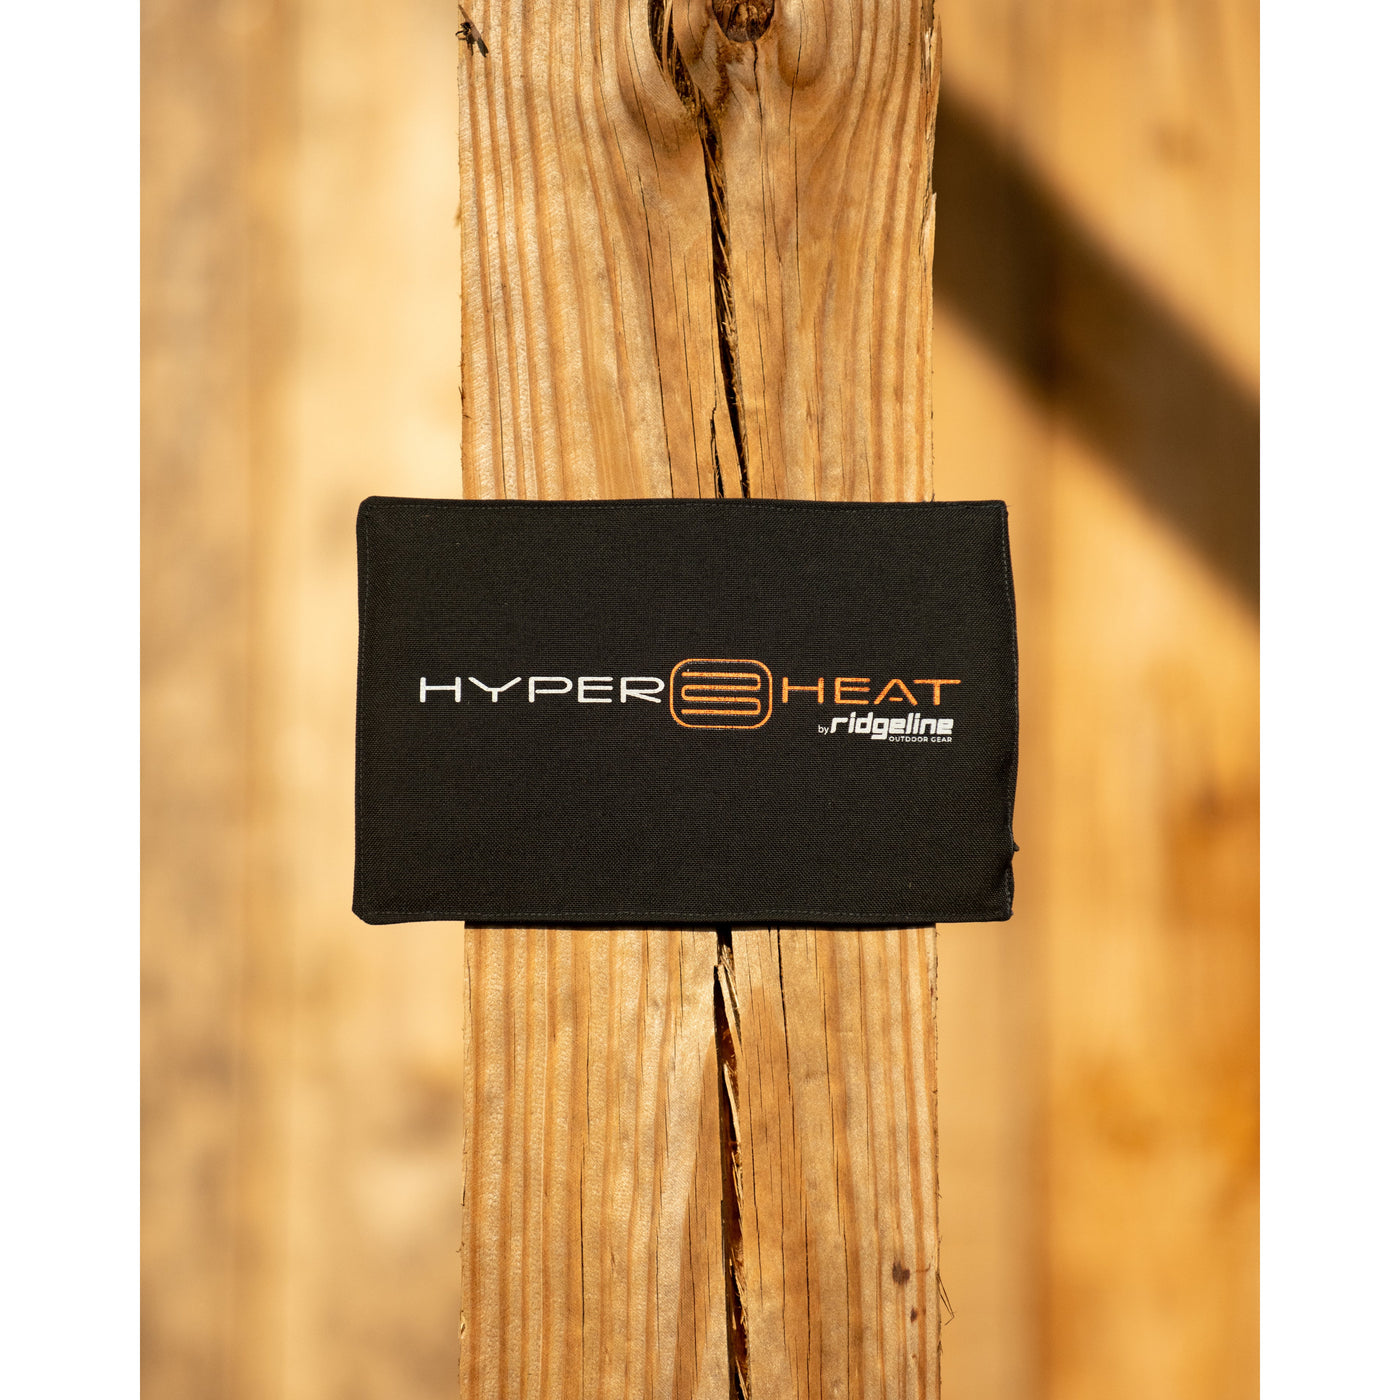 HyperHeat Mini Bundle